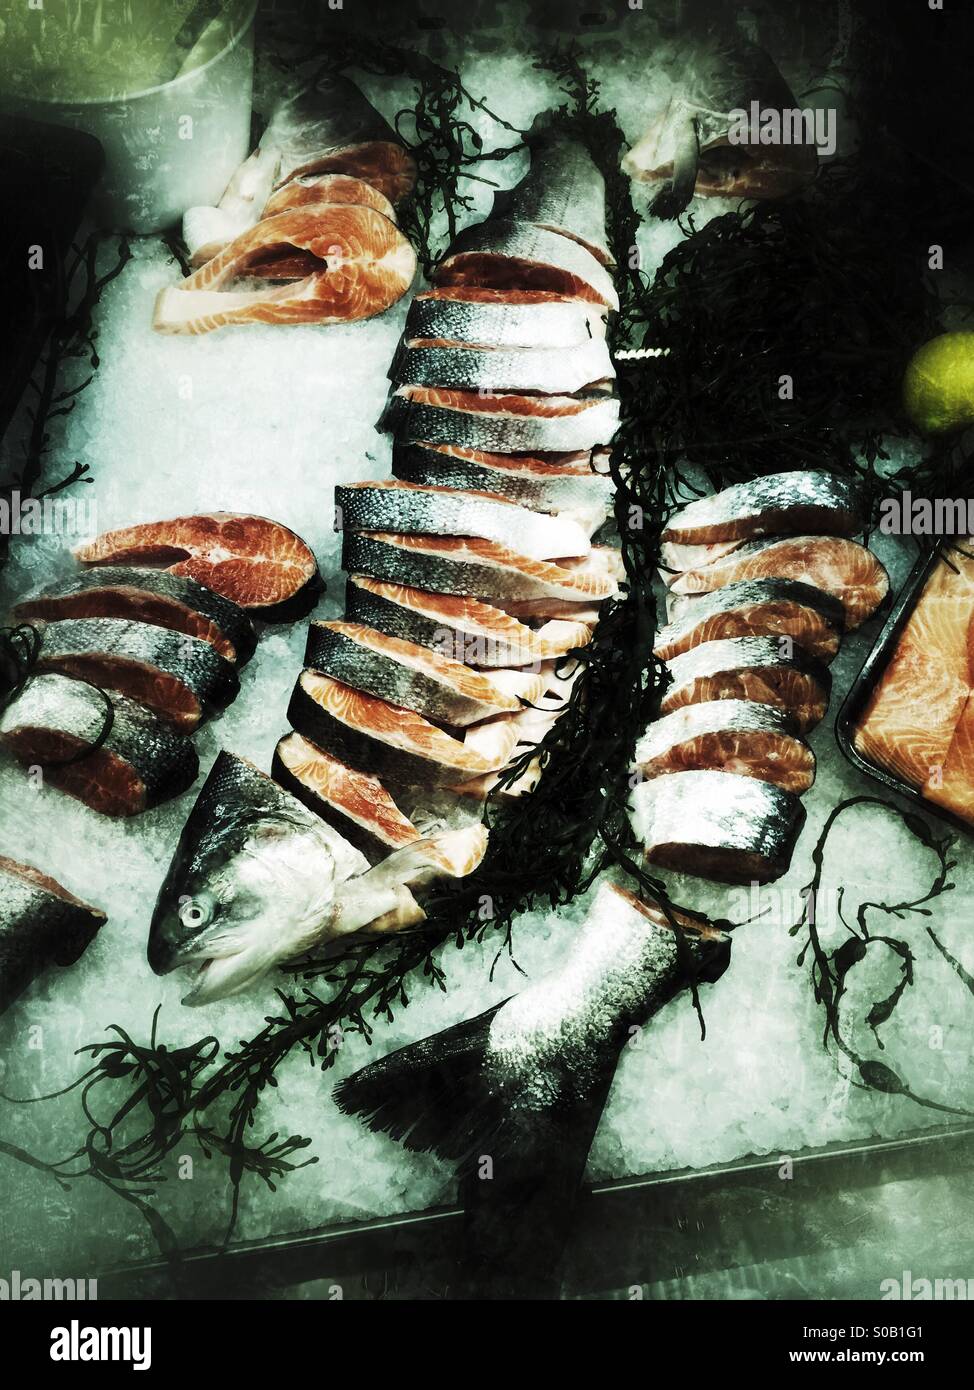 Forelle zerschnitten in Scheiben auf dem Display im Supermarkt. Stockfoto